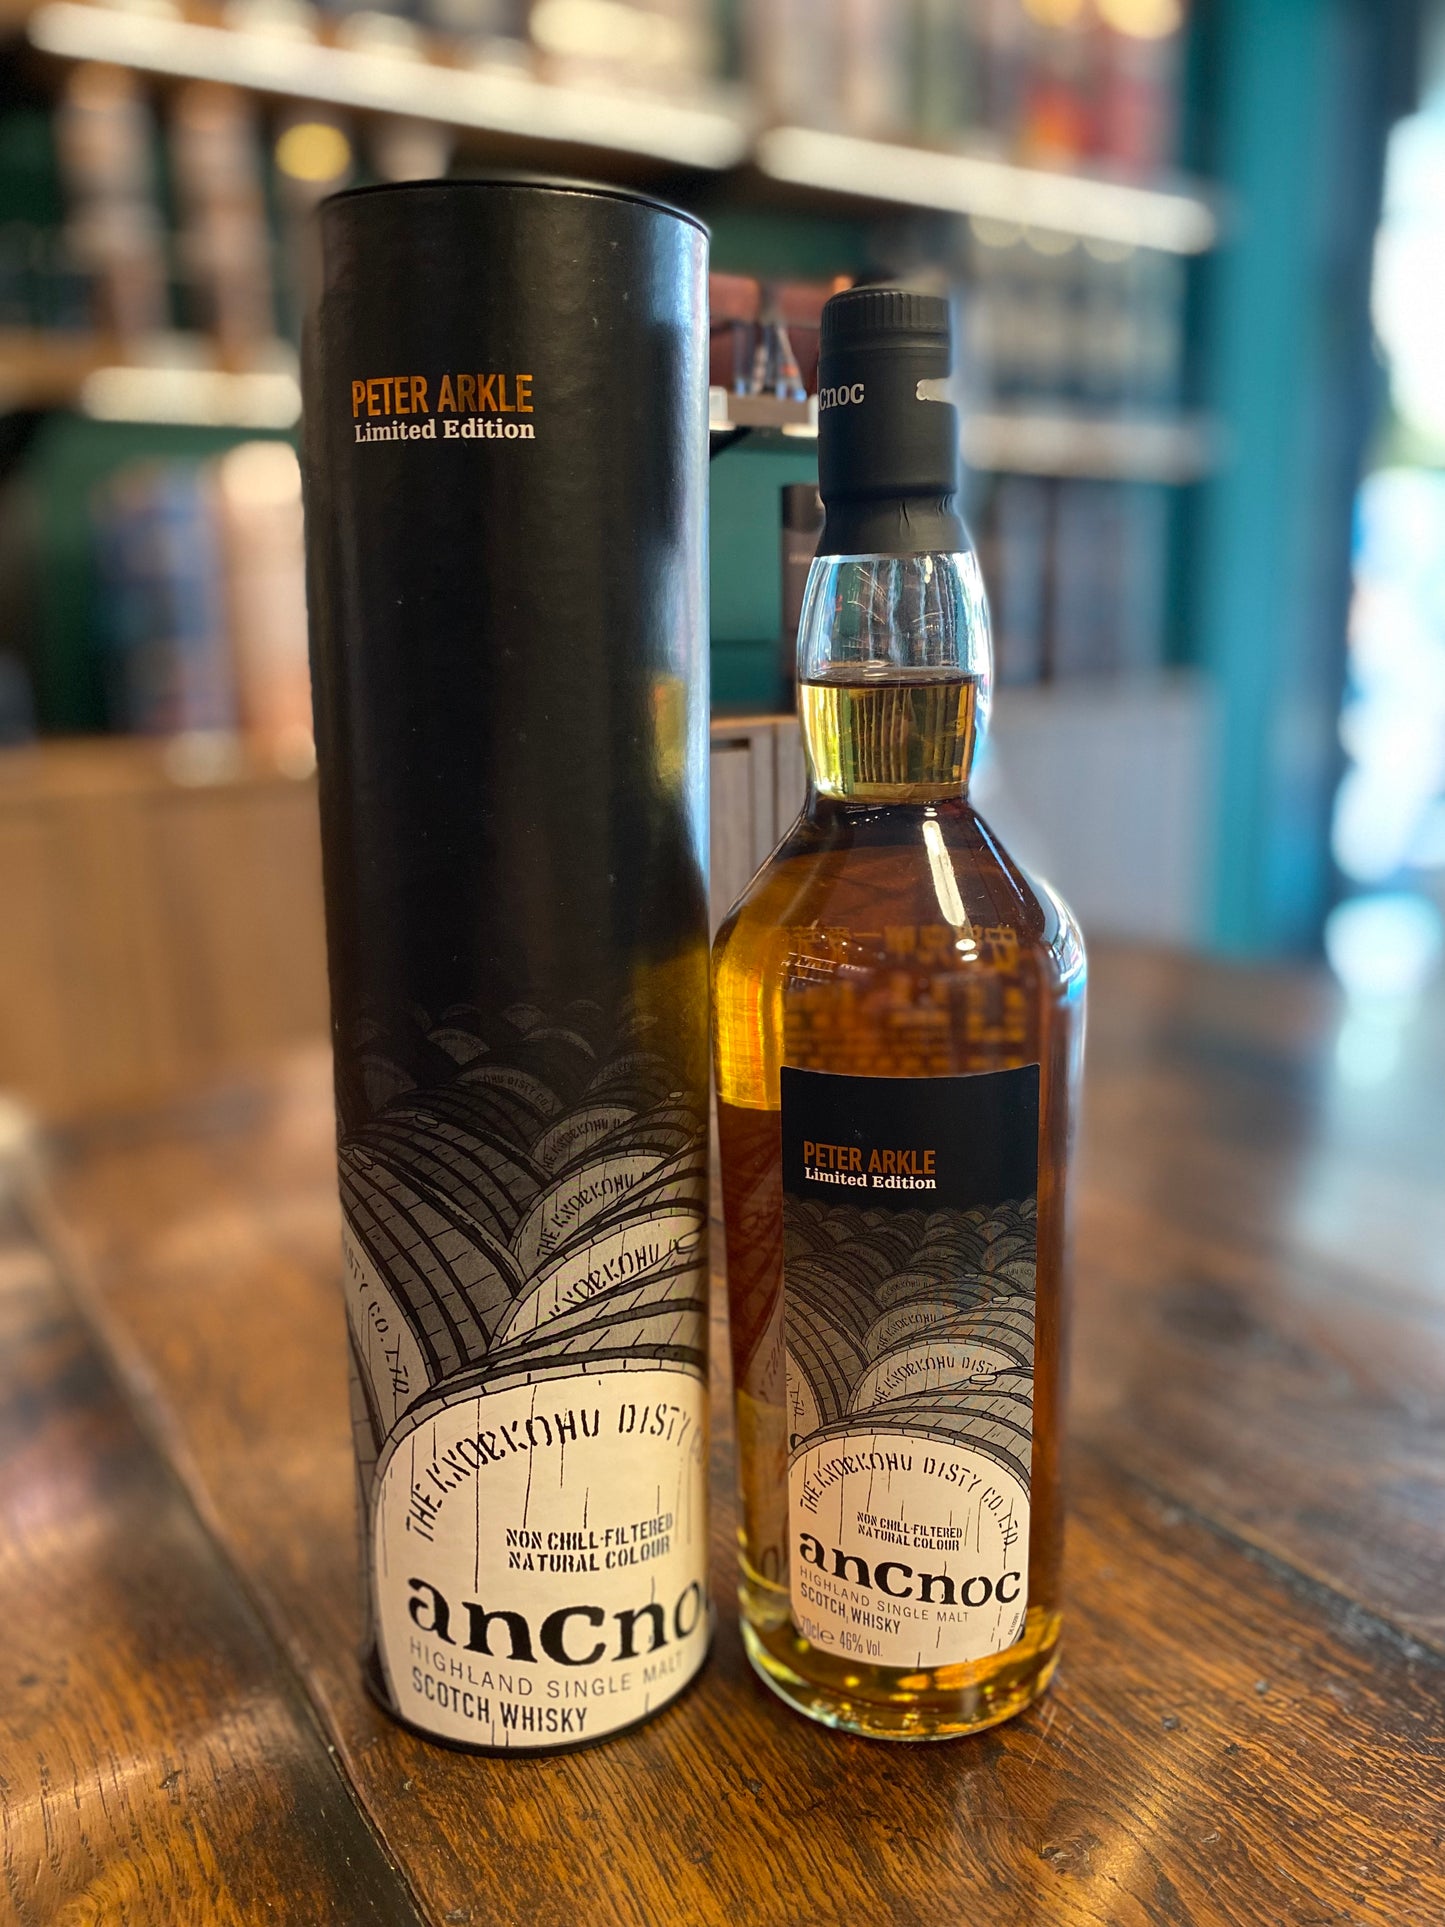 安努克AnCnoc - Peter Arkle 2nd Edition - Casks Whisky,700ml,46%